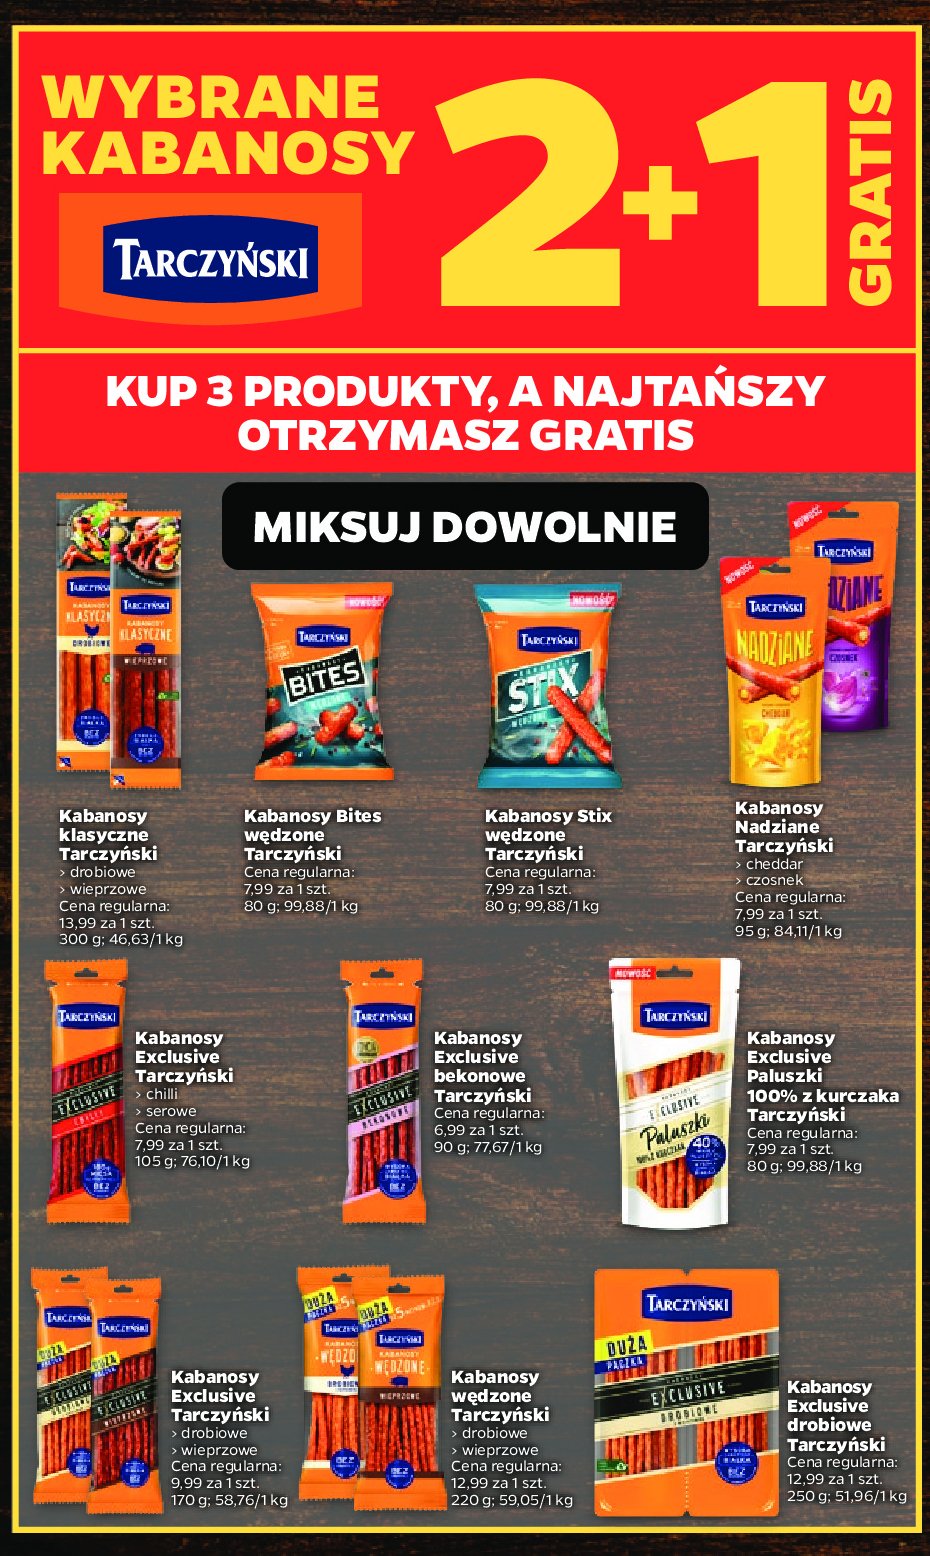 Kabanosy serowe Tarczyński exclusive promocja